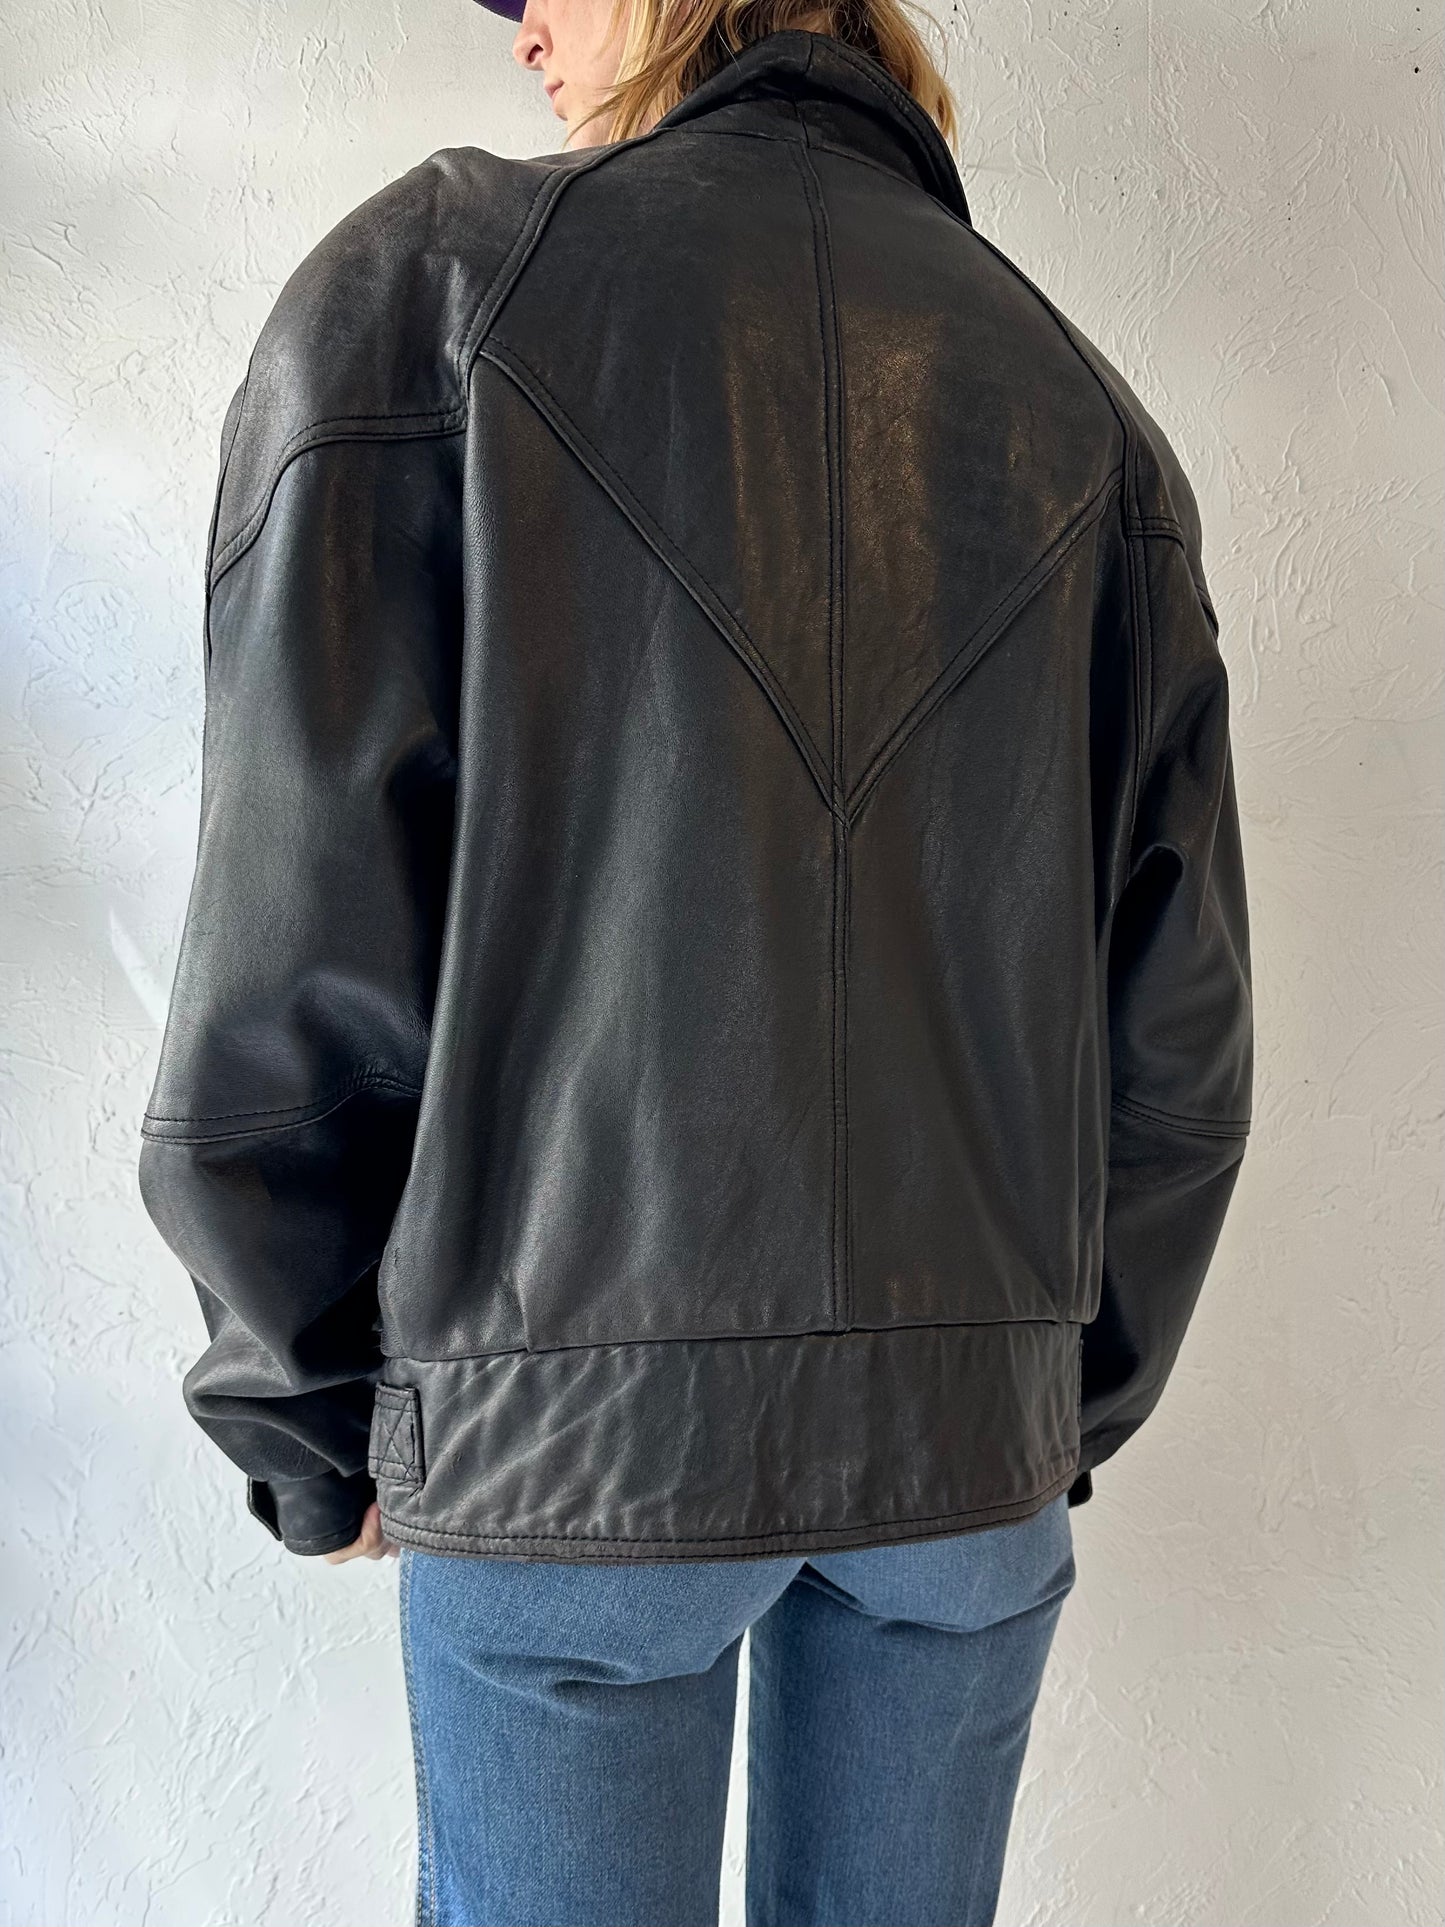 90s Black Leather Bomber Jacket / Medium